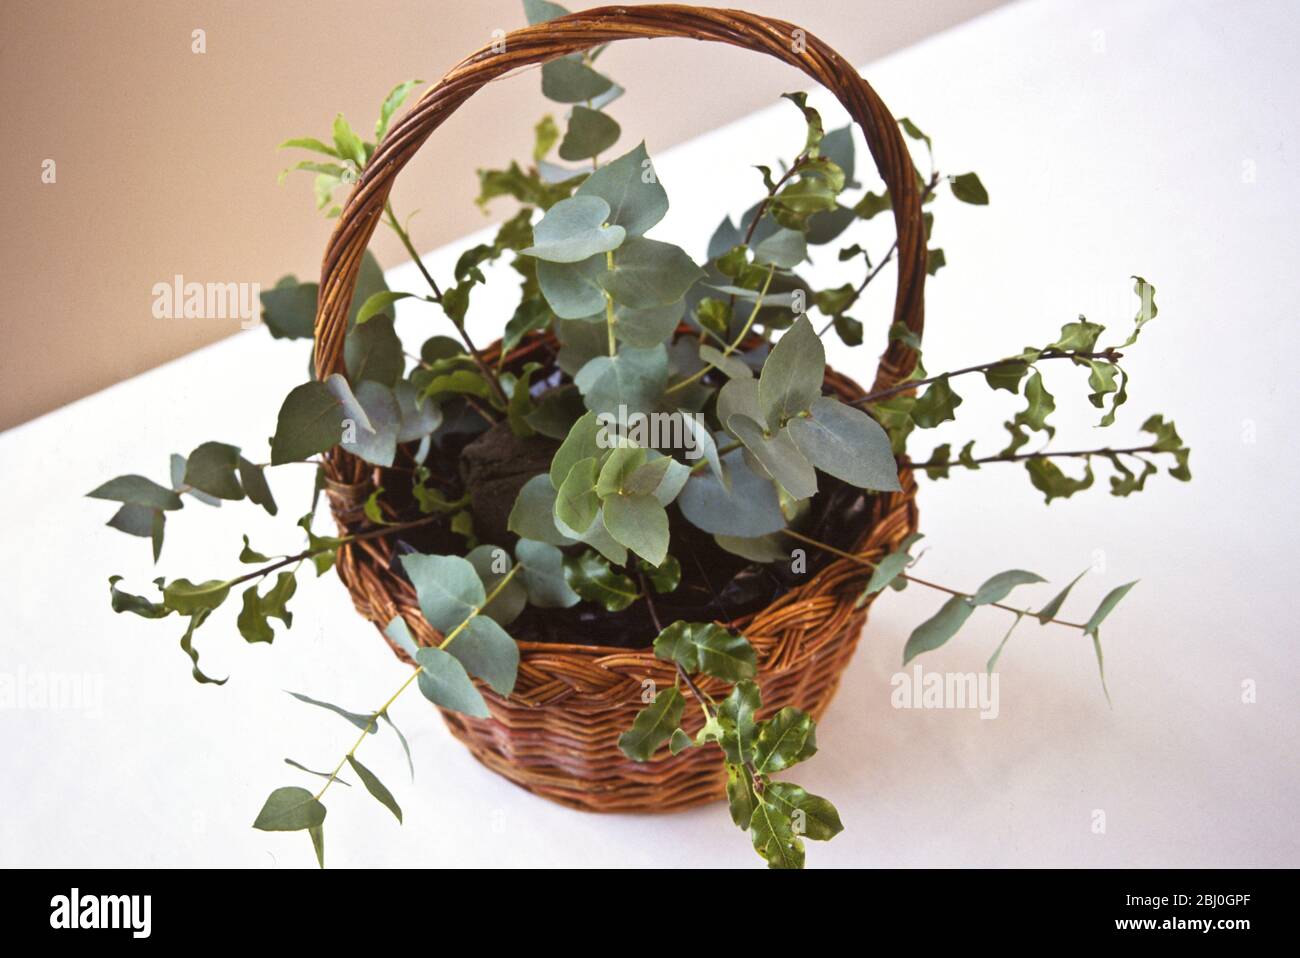 Fondazione di arrangiamento floreale - eucalipto e verde in oasi in cesto maneggiato - Foto Stock